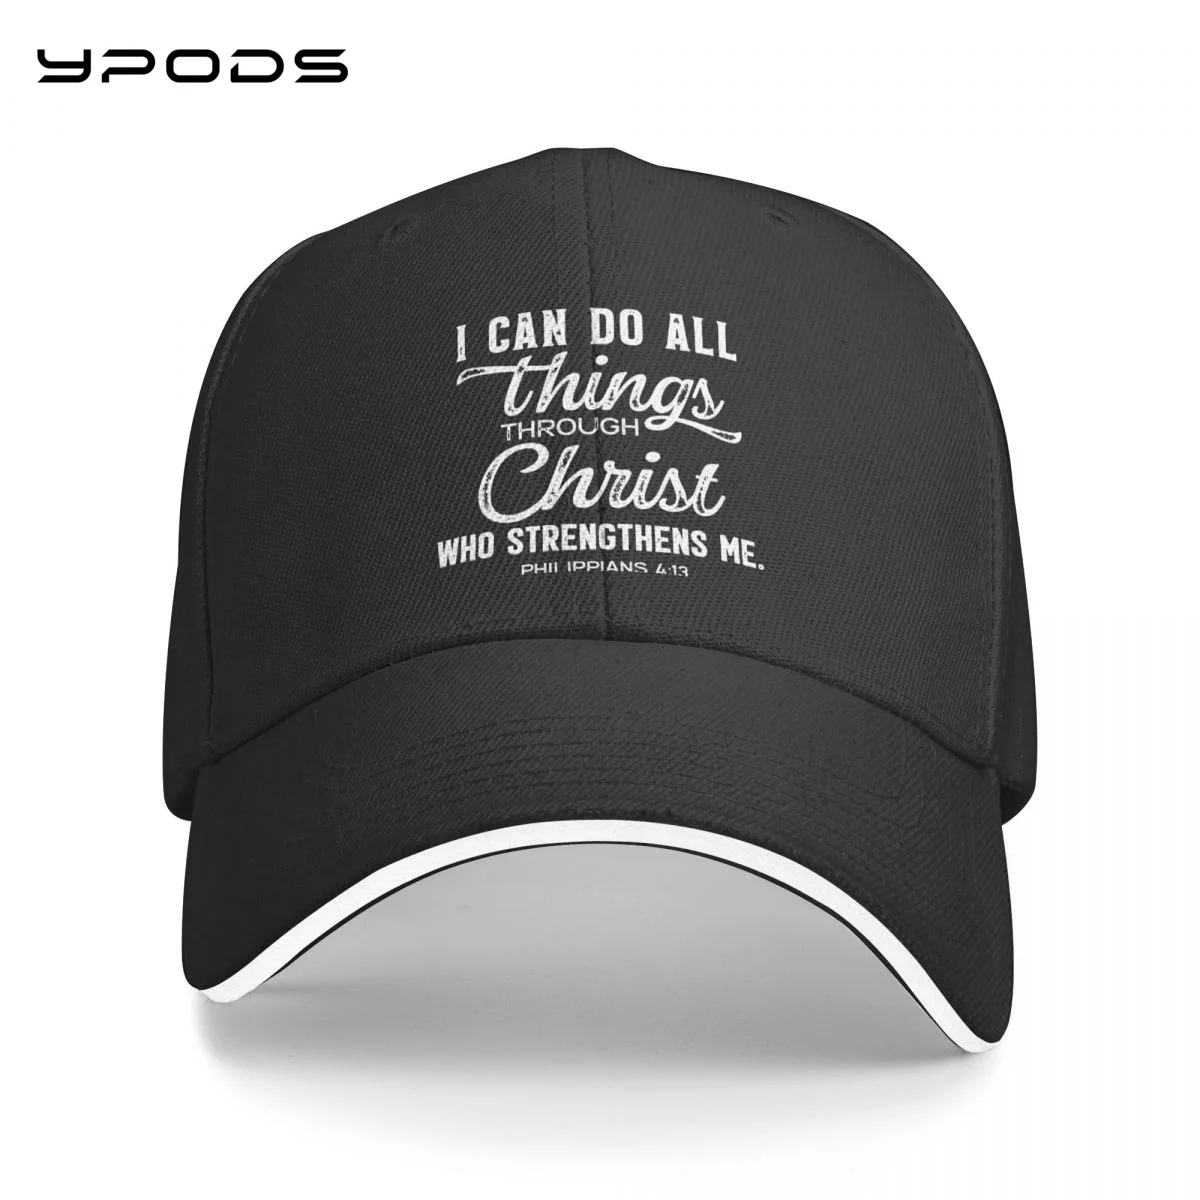 

I Can Do All Things Through Christ, Christian God for women men Baseball Caps Ball Hat Adjustable Trucker Hat